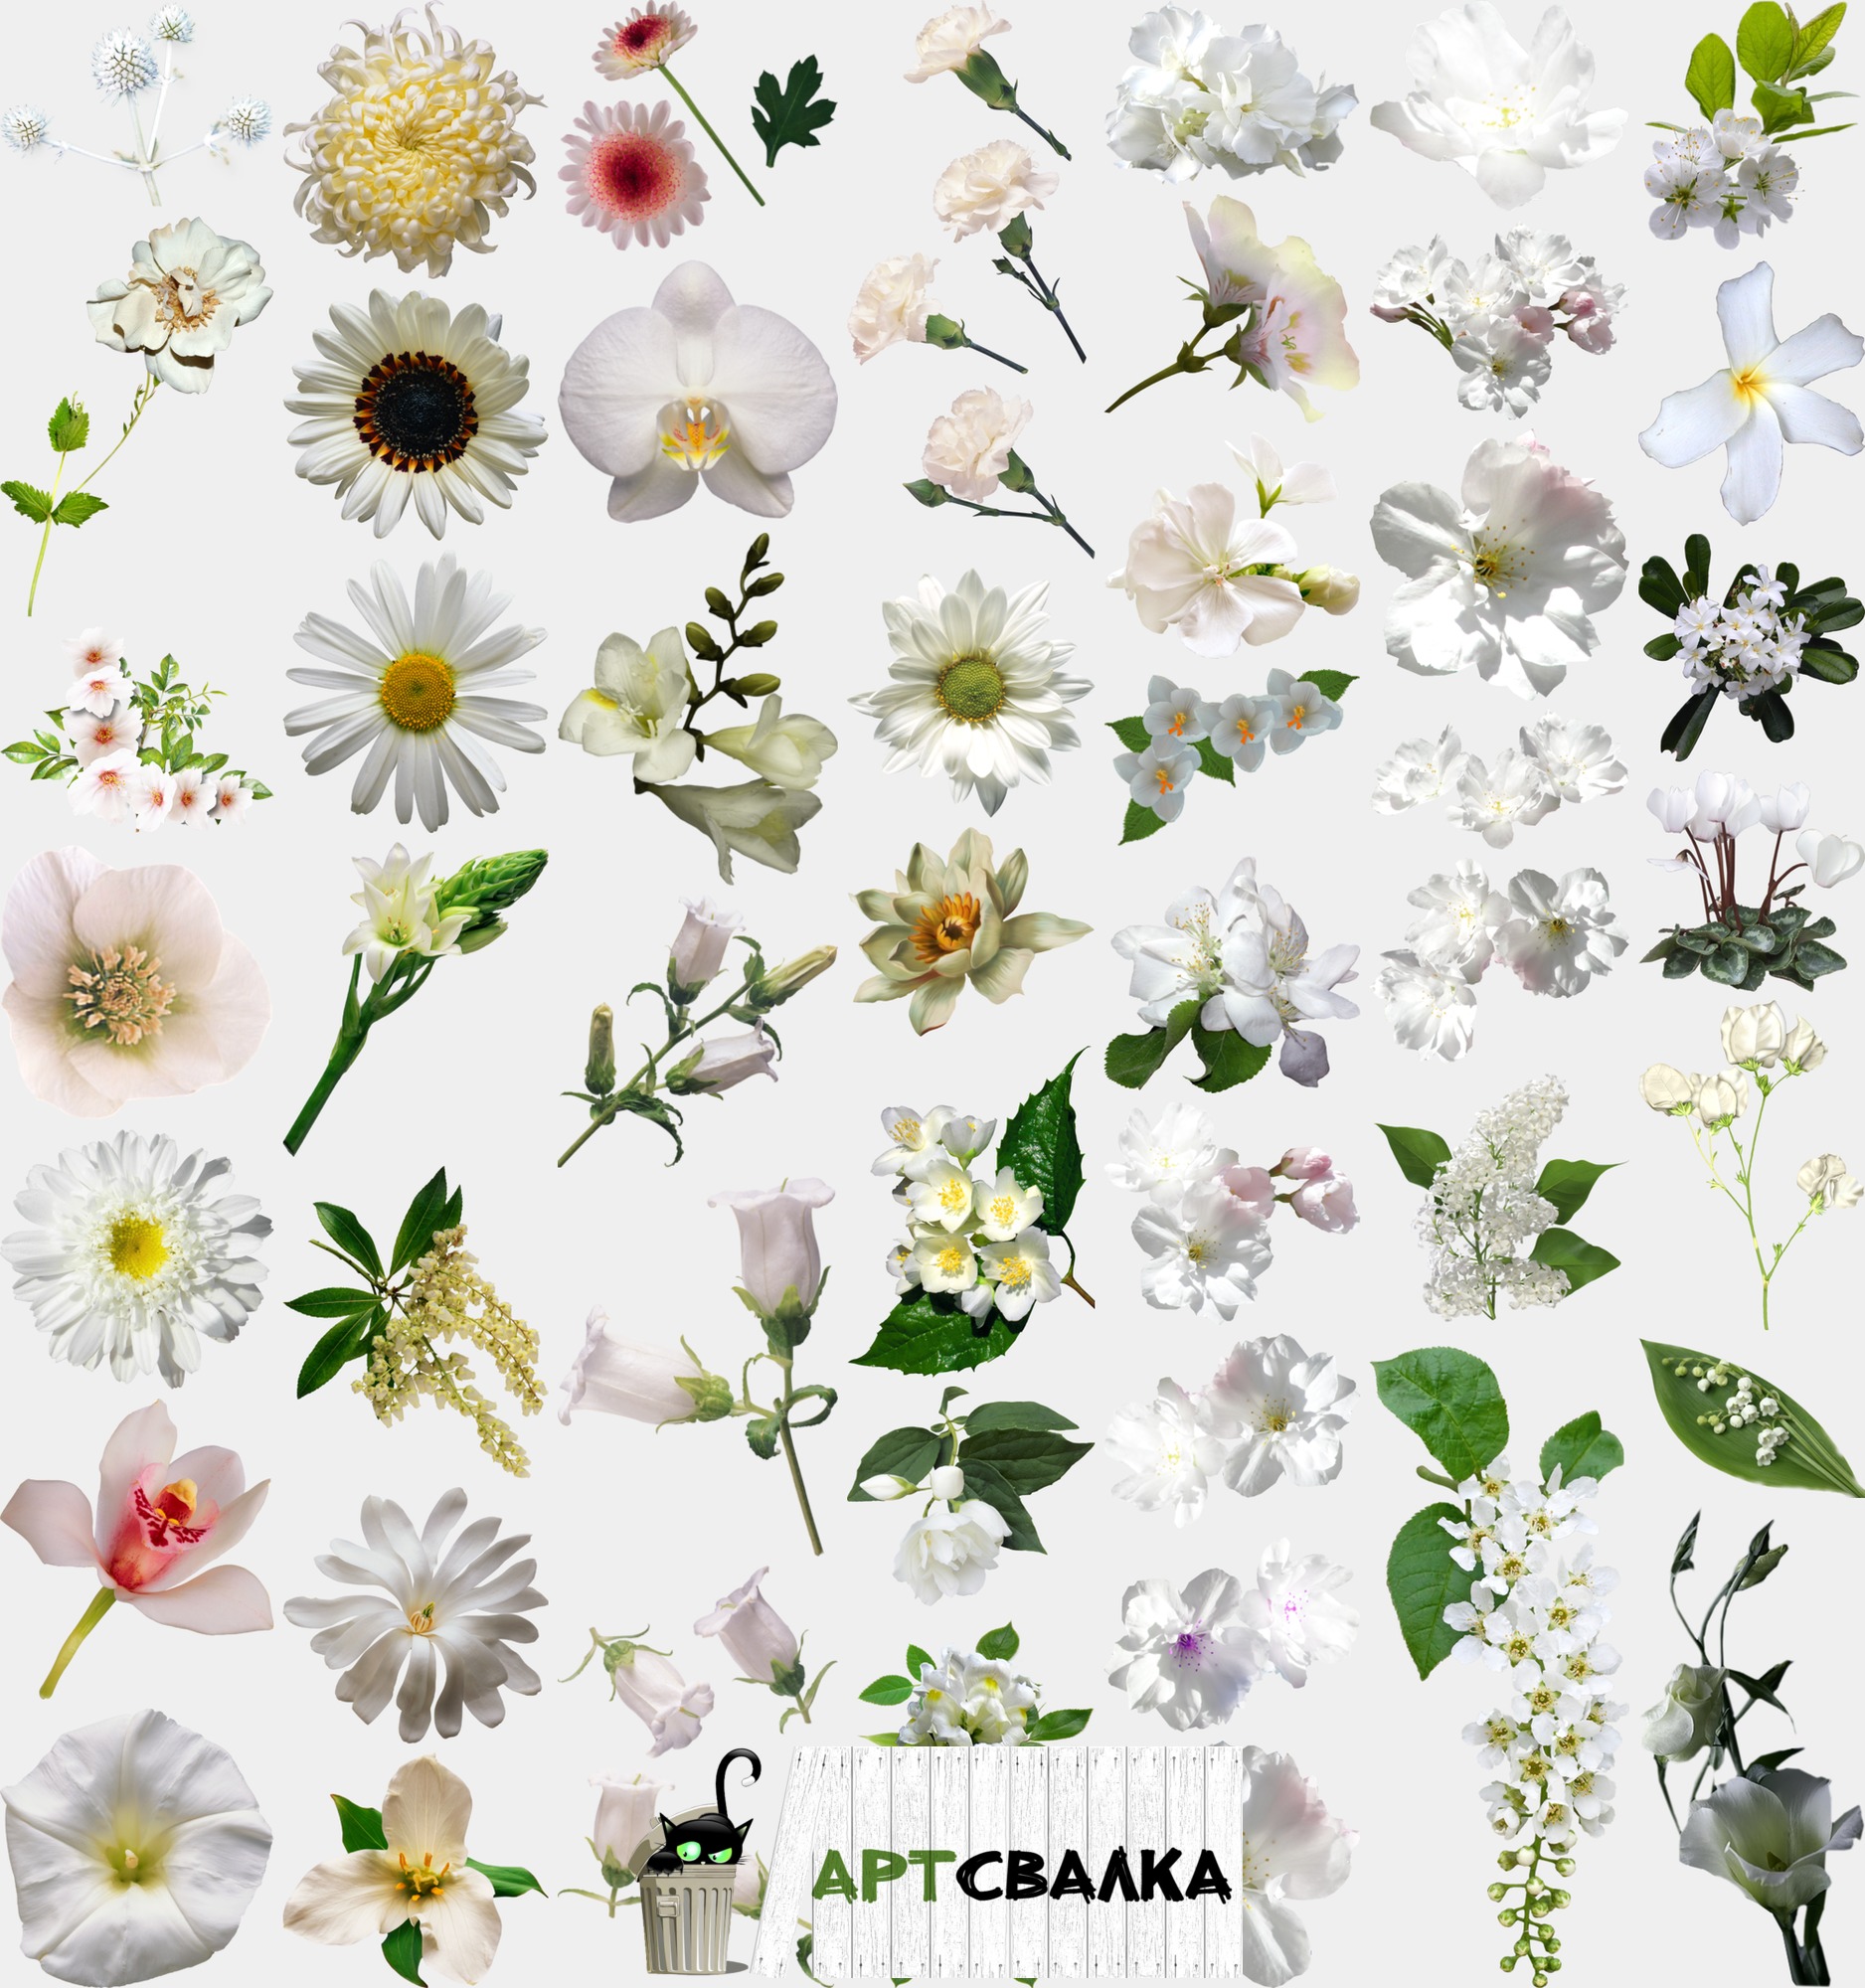 Белые цветы на прозрачном фоне. Часть 2 | White flowers on a transparent background. Part 2